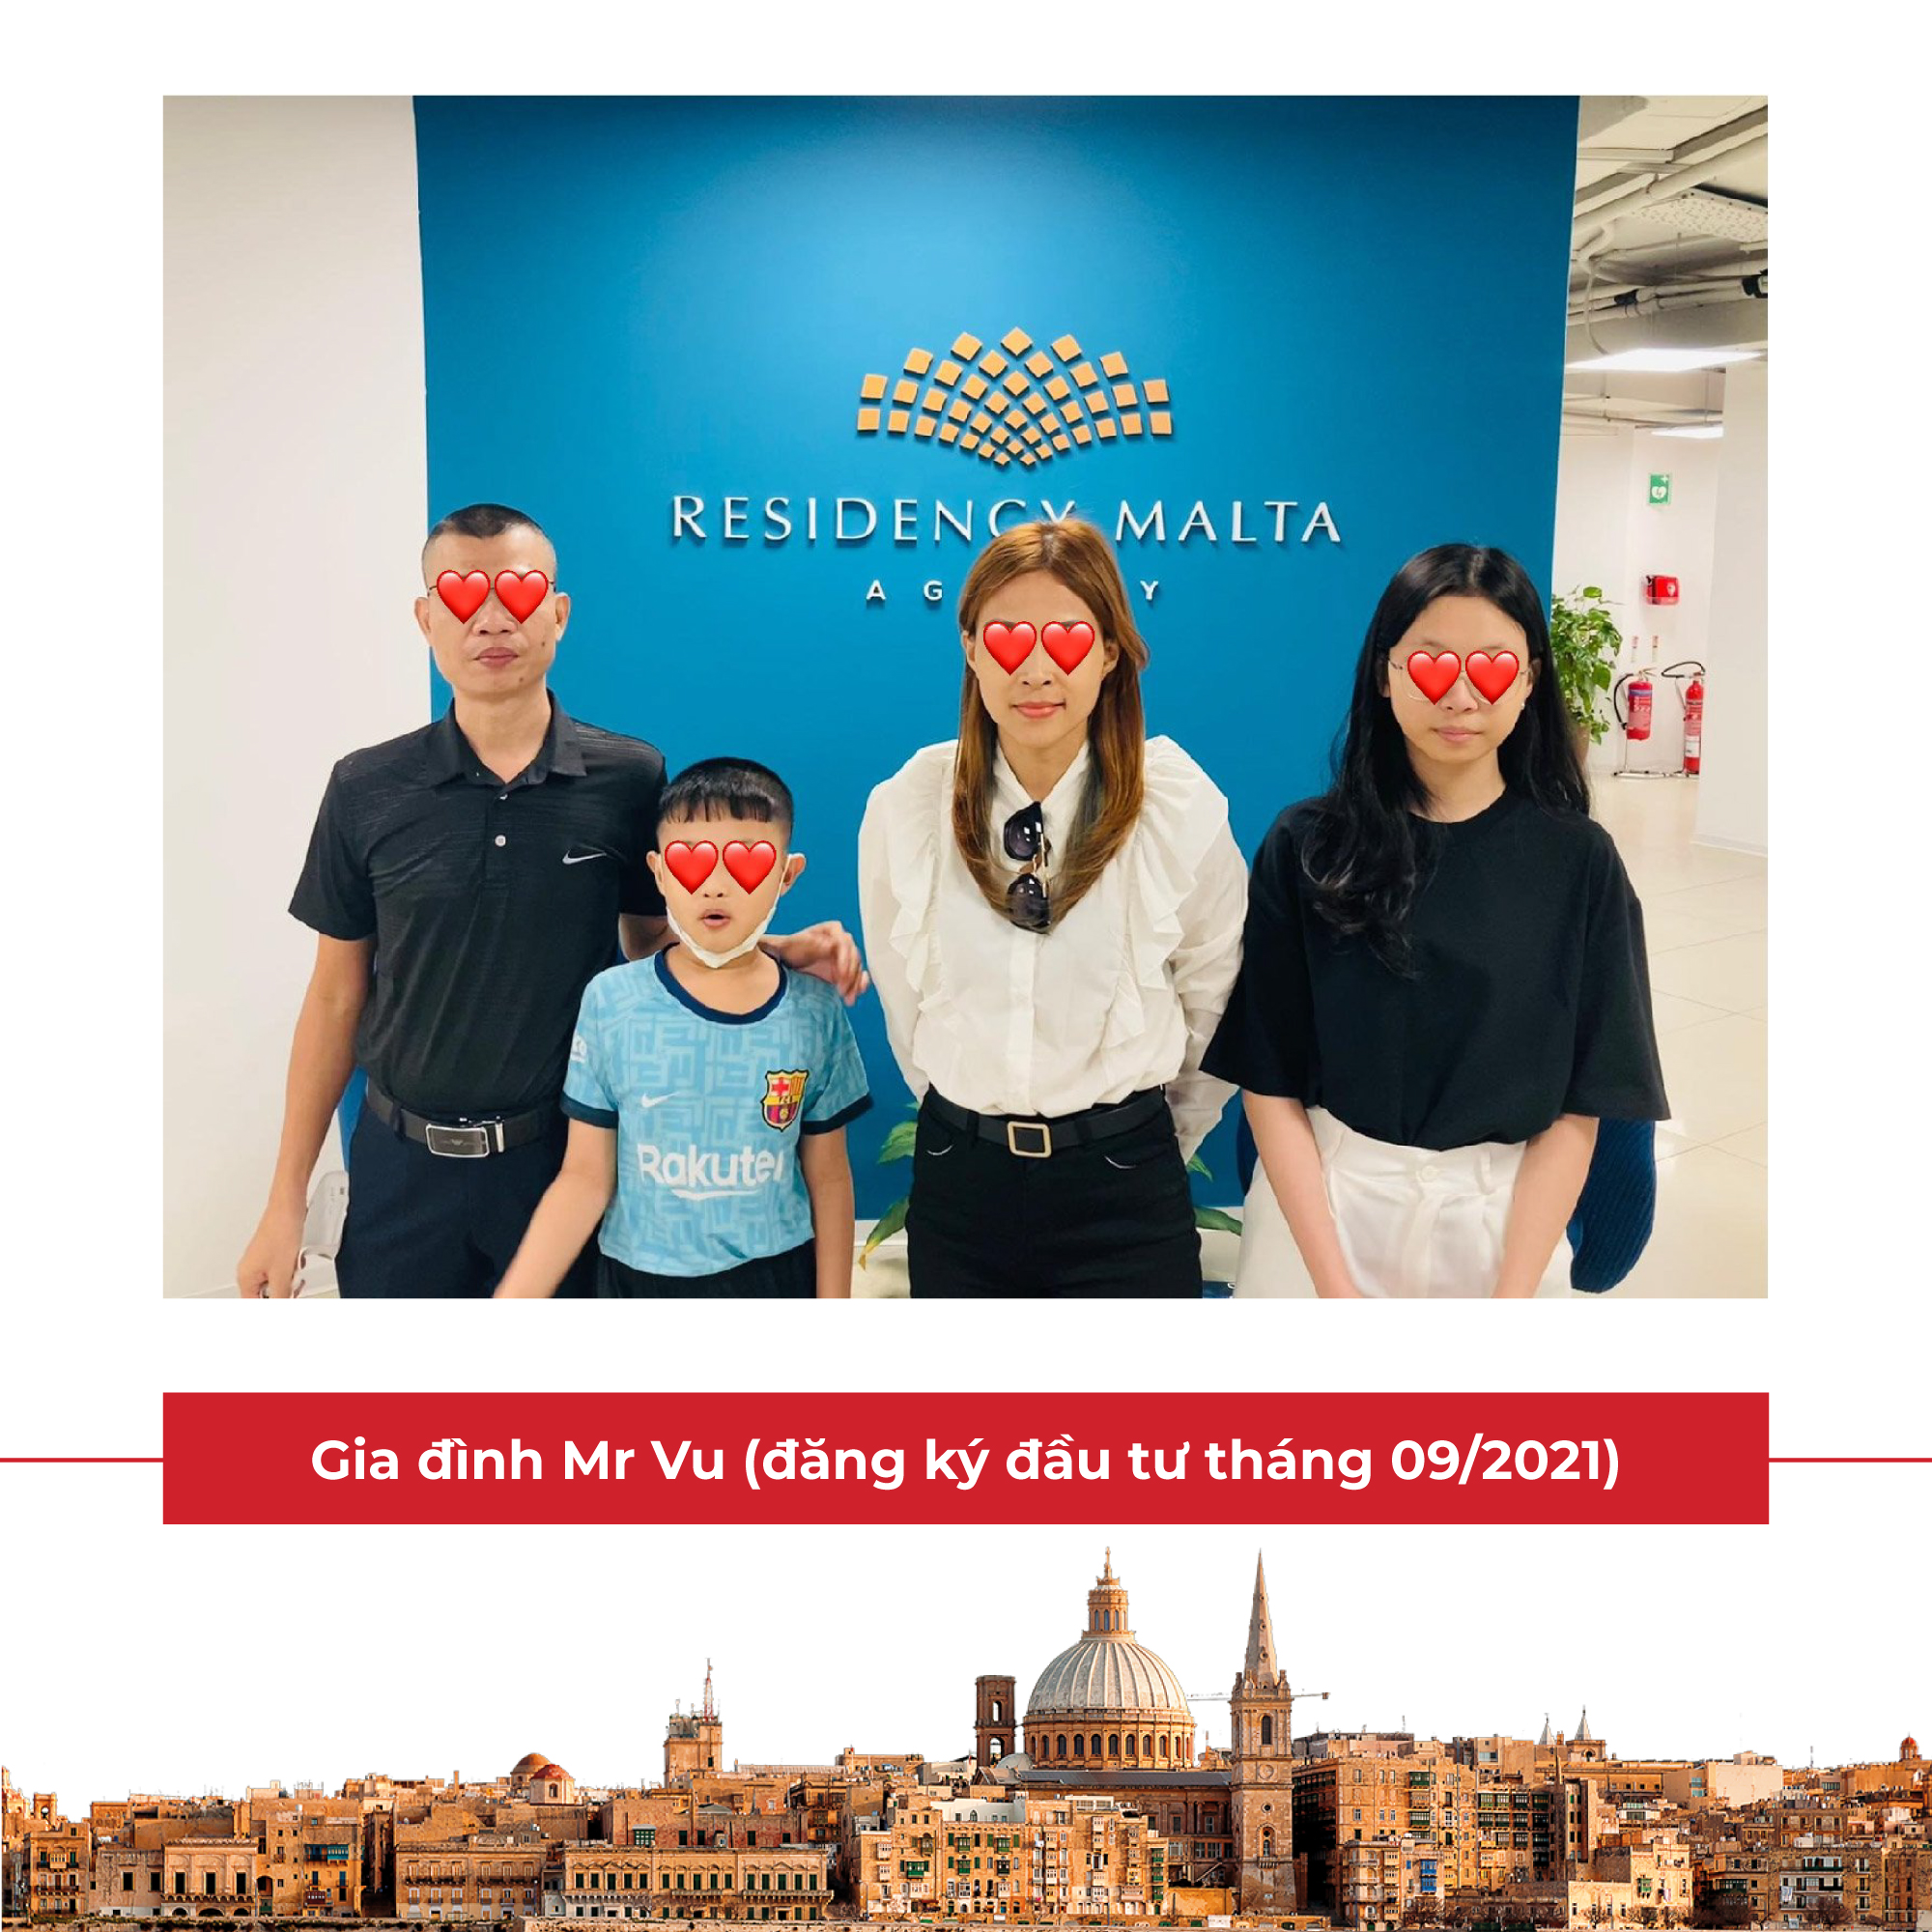 Gia đình Mr Vu (đăng ký đầu tư tháng 09/2021): Tháng 06/2022 cả gia đình gồm Chồng, Vợ và 2 con sang Cục di trú Malta làm sinh trắc học (Biometrics) và nhận thẻ thường trú nhân (thẻ cứng).